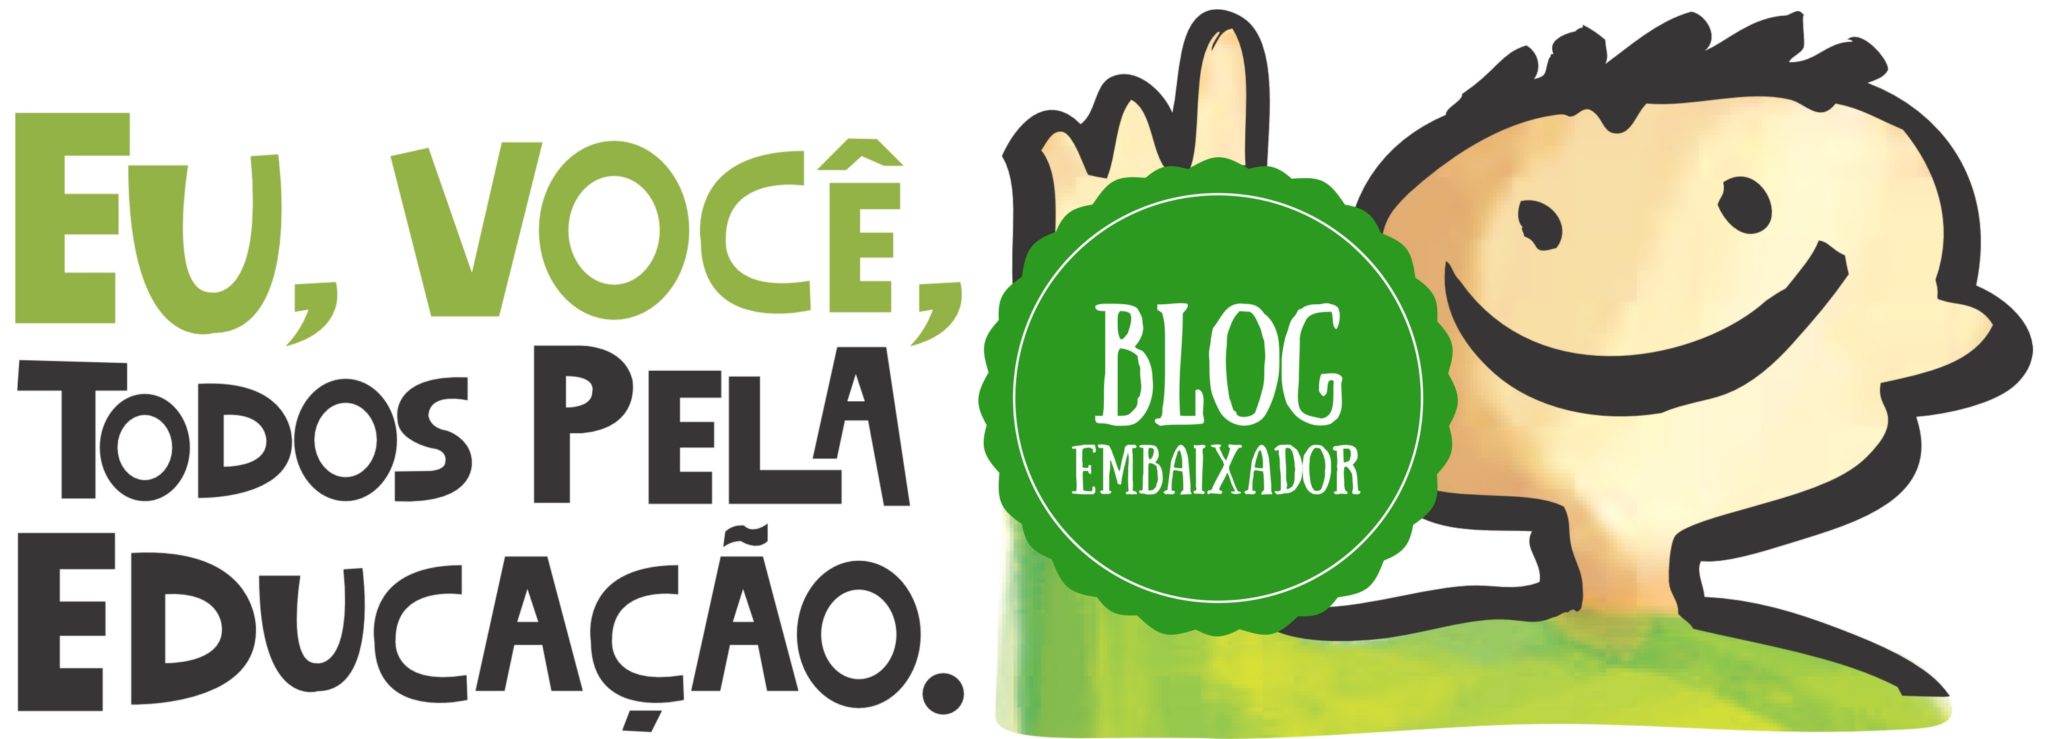 Selo Blog Embaixador Todos pela Educação